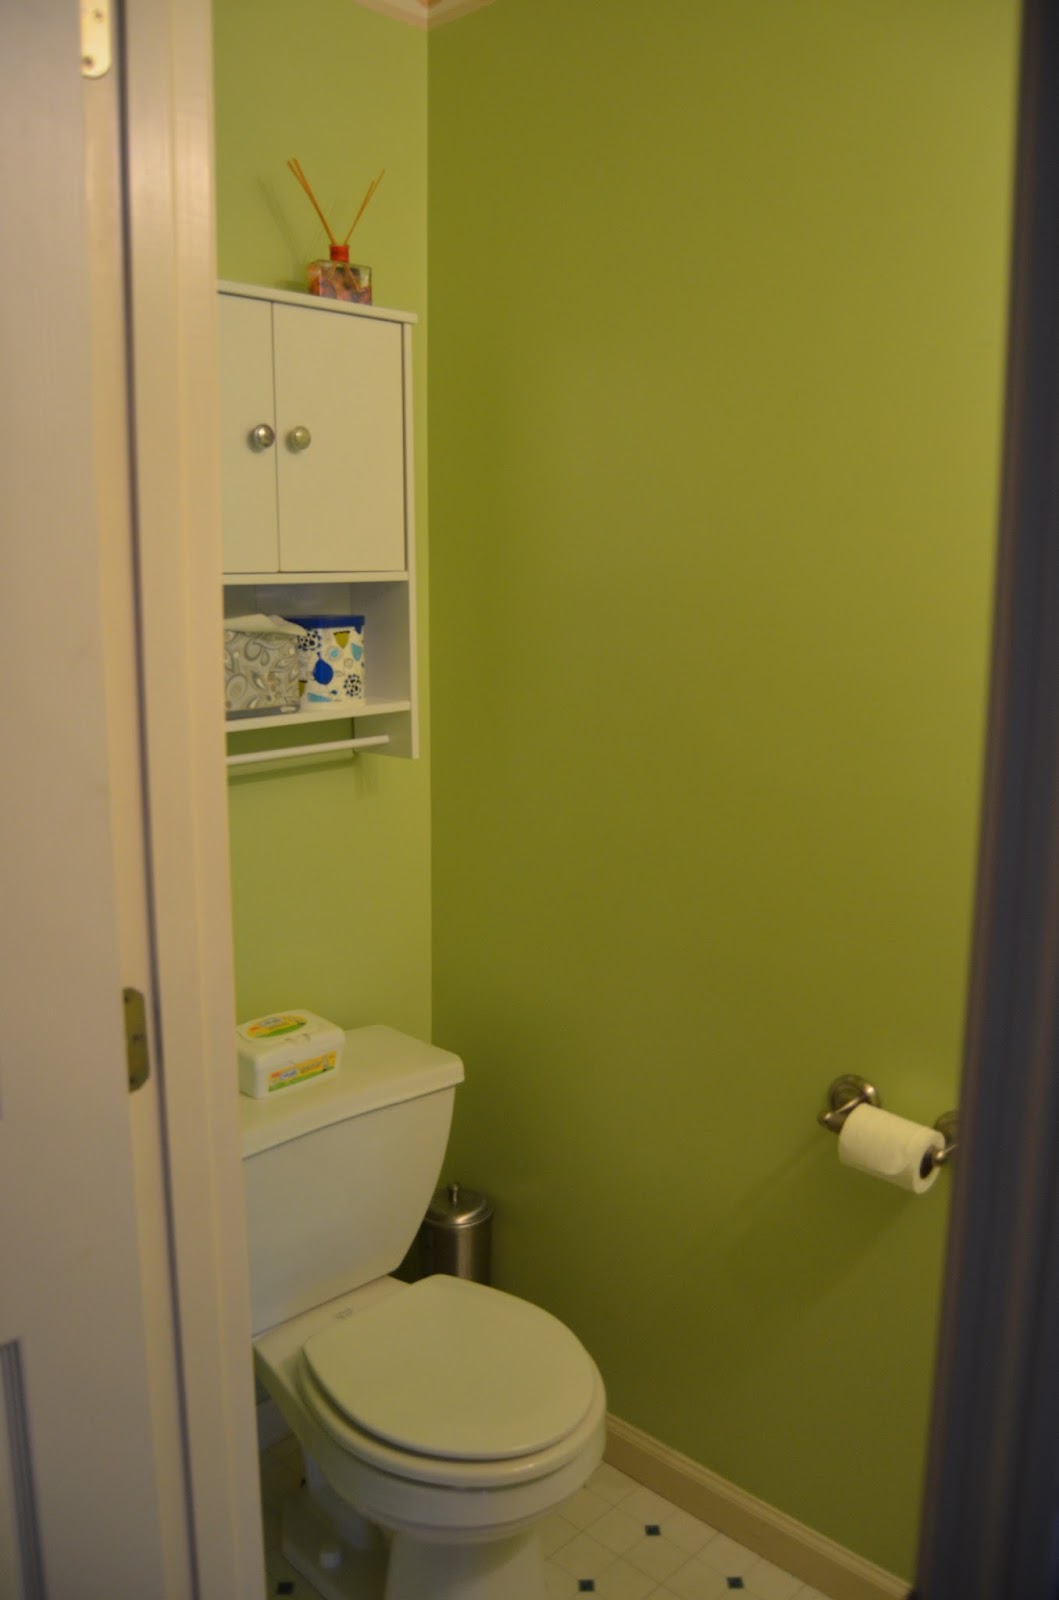 リビングルームの壁紙ボーダー,浴室,ルーム,財産,トイレ,バスルームアクセサリー